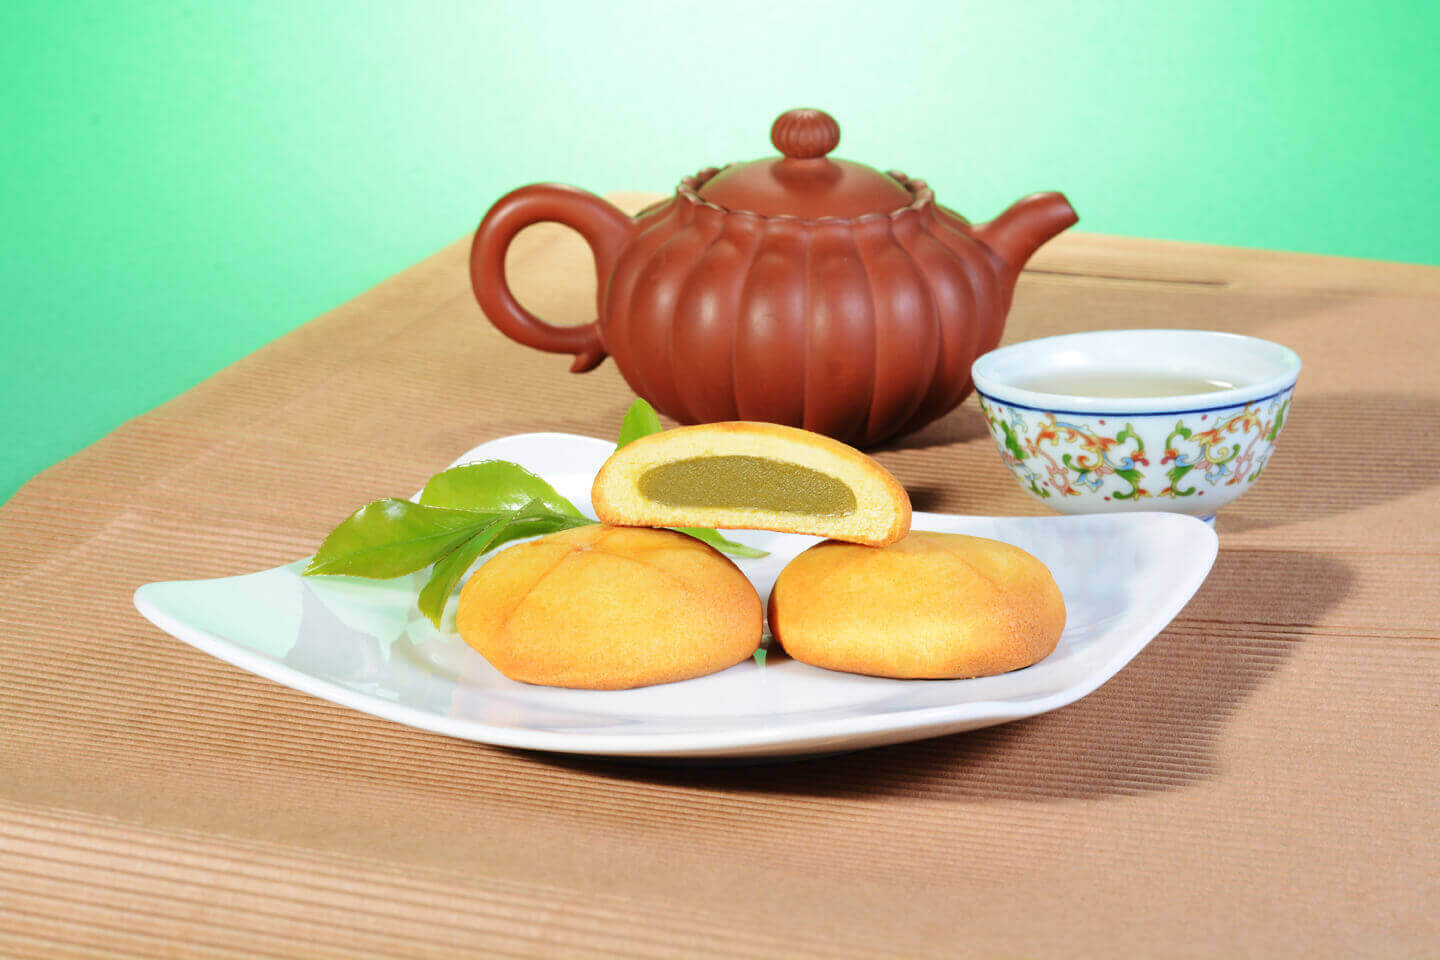 曾記麻糬綠茶麻糬餅,花蓮特產,甜點,下午茶,小點心,花蓮麻糬,green-tea-mochi-cake,tzen,hualien